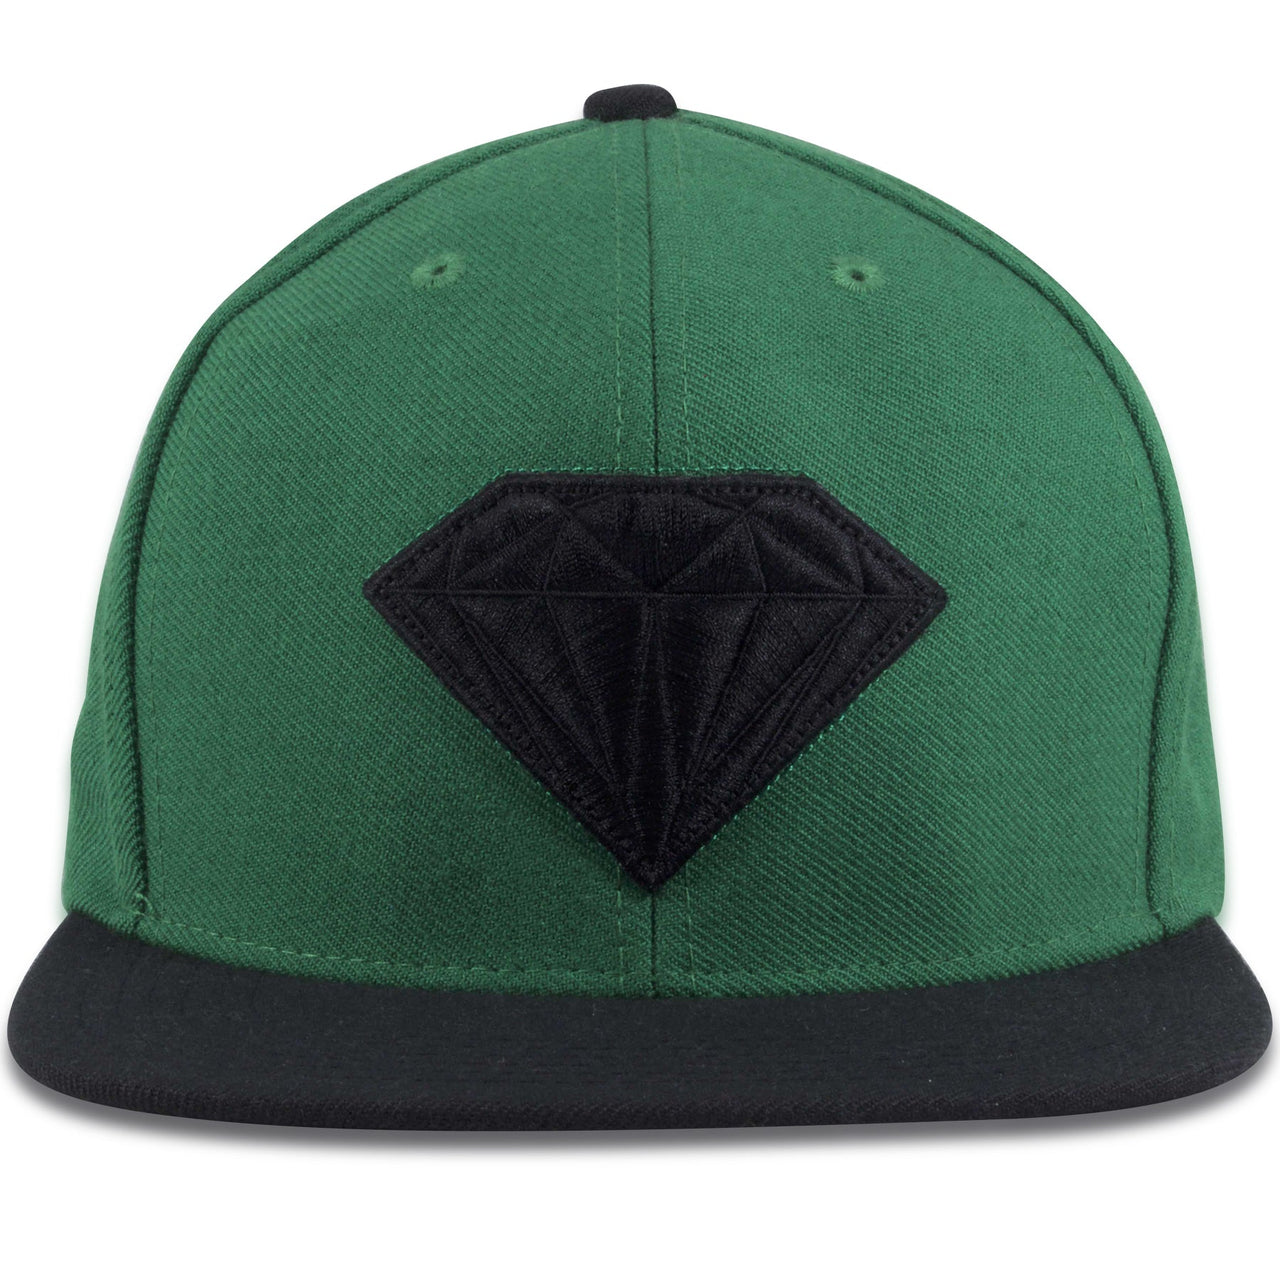 Diamond Emblem Green on Black Adjustable Snapback Hat